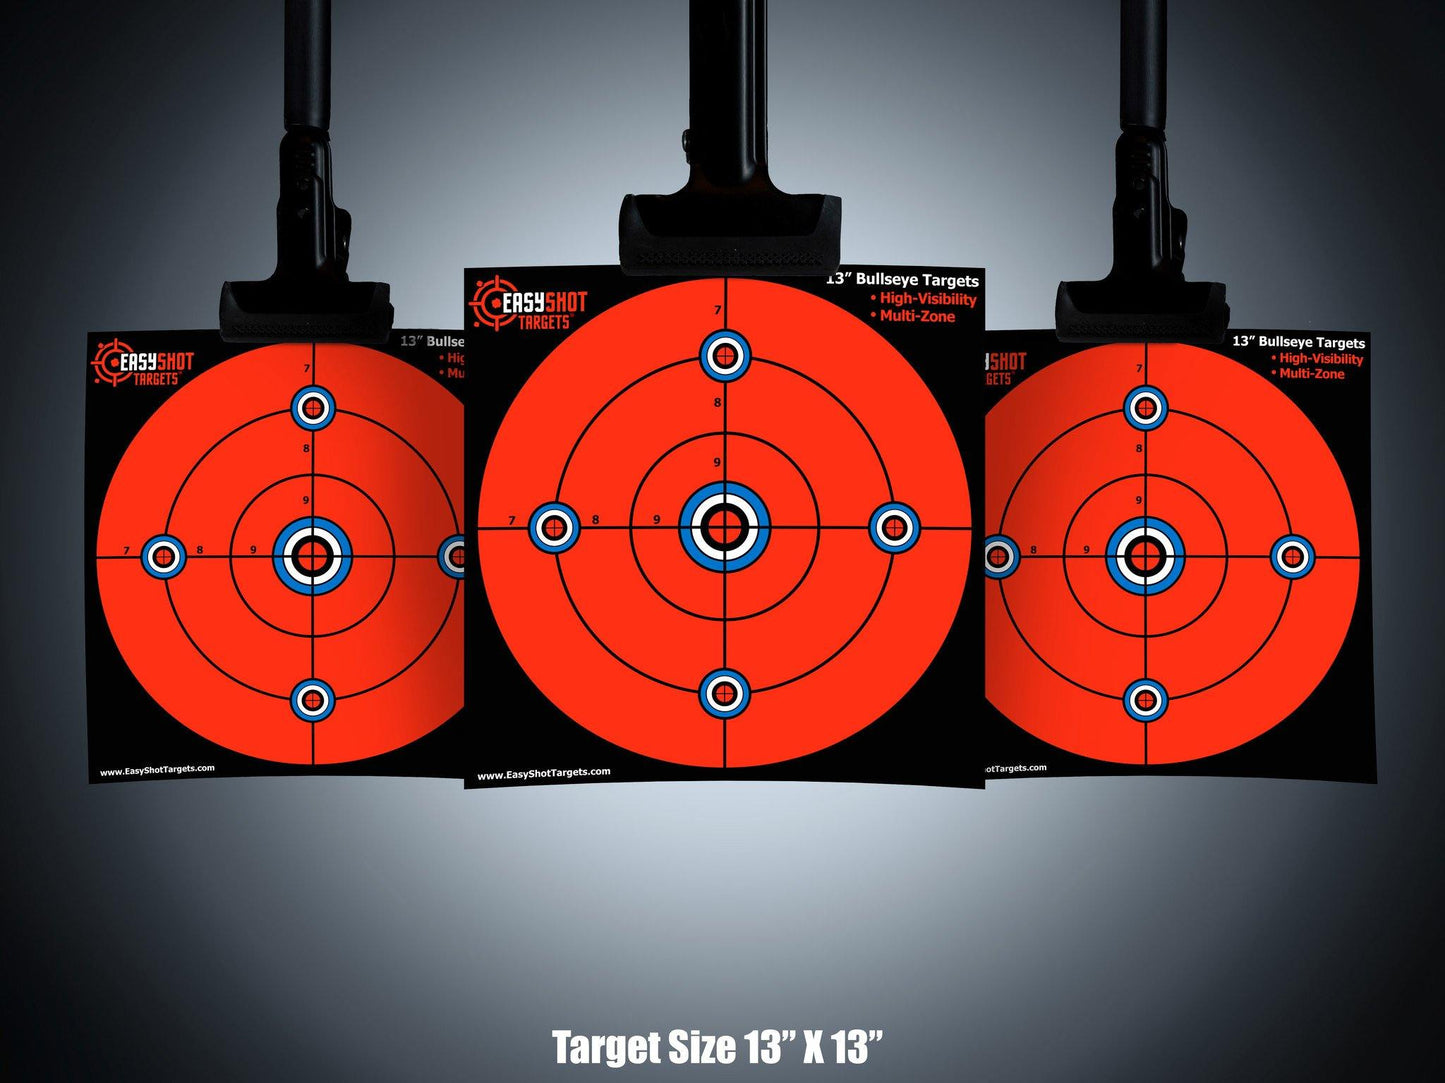 100 PACK- 13" Bullseye Targets - EasyShot Targets